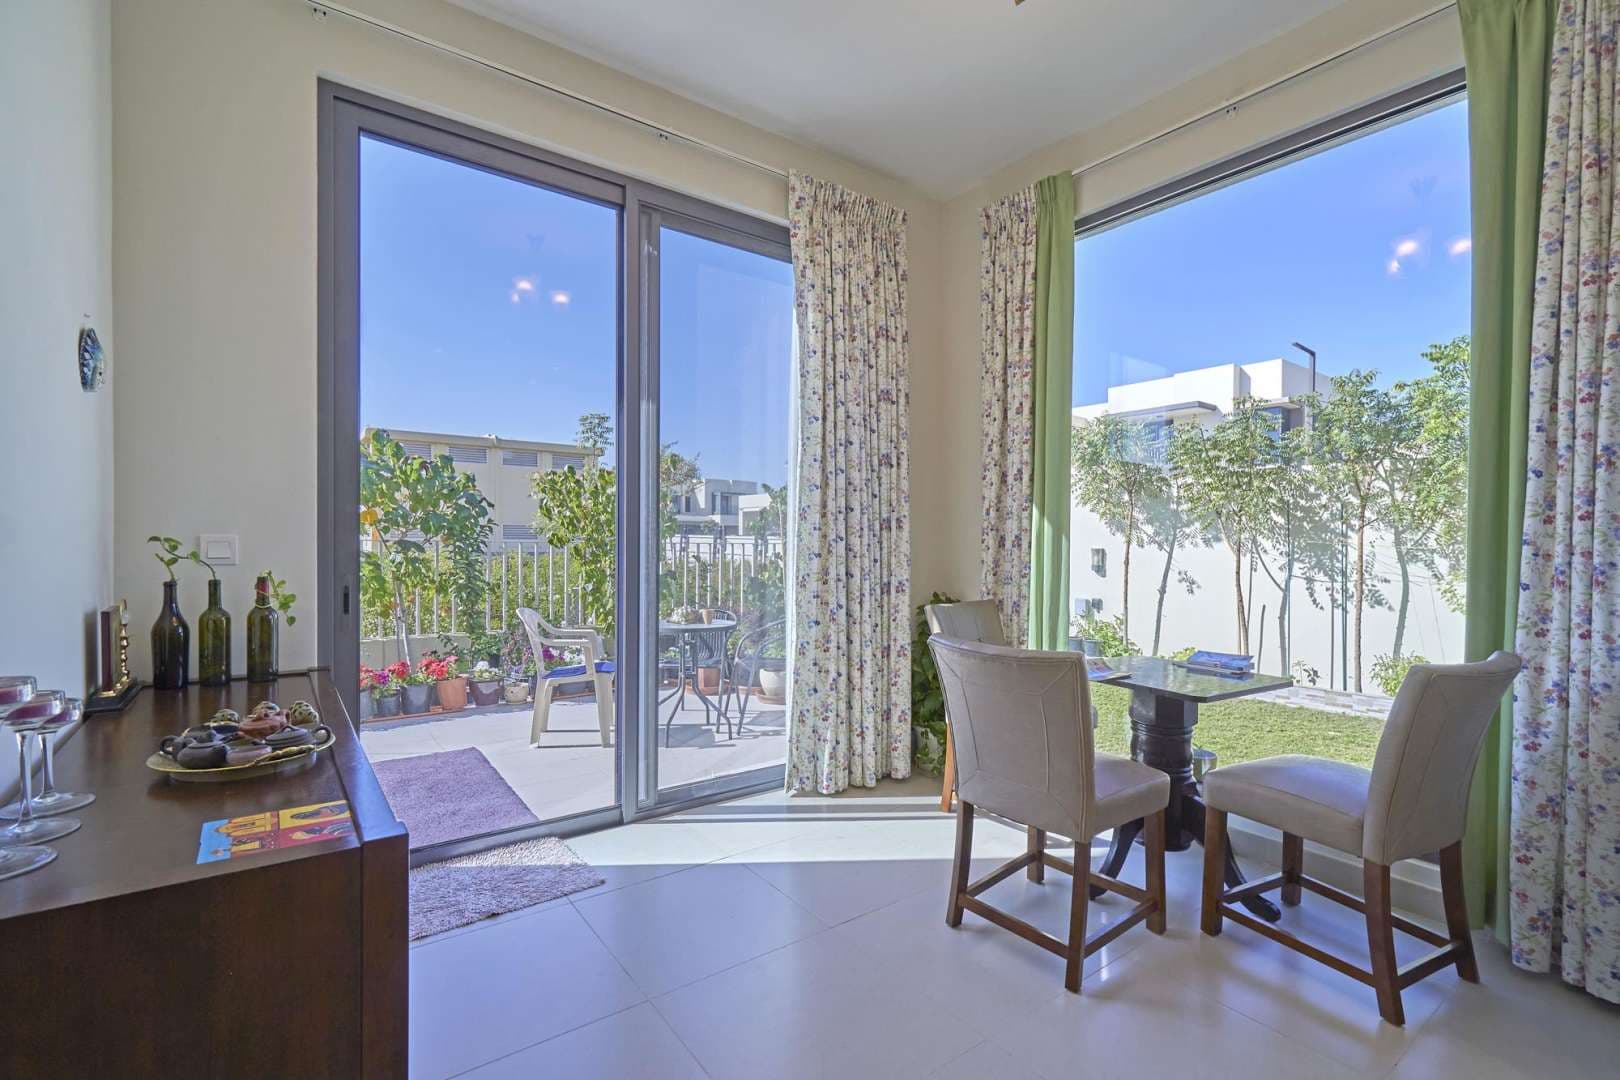 5 Bedroom Townhouse For Rent Maple At Dubai Hills Estate Lp05669 2b7efdda99580200.jpg